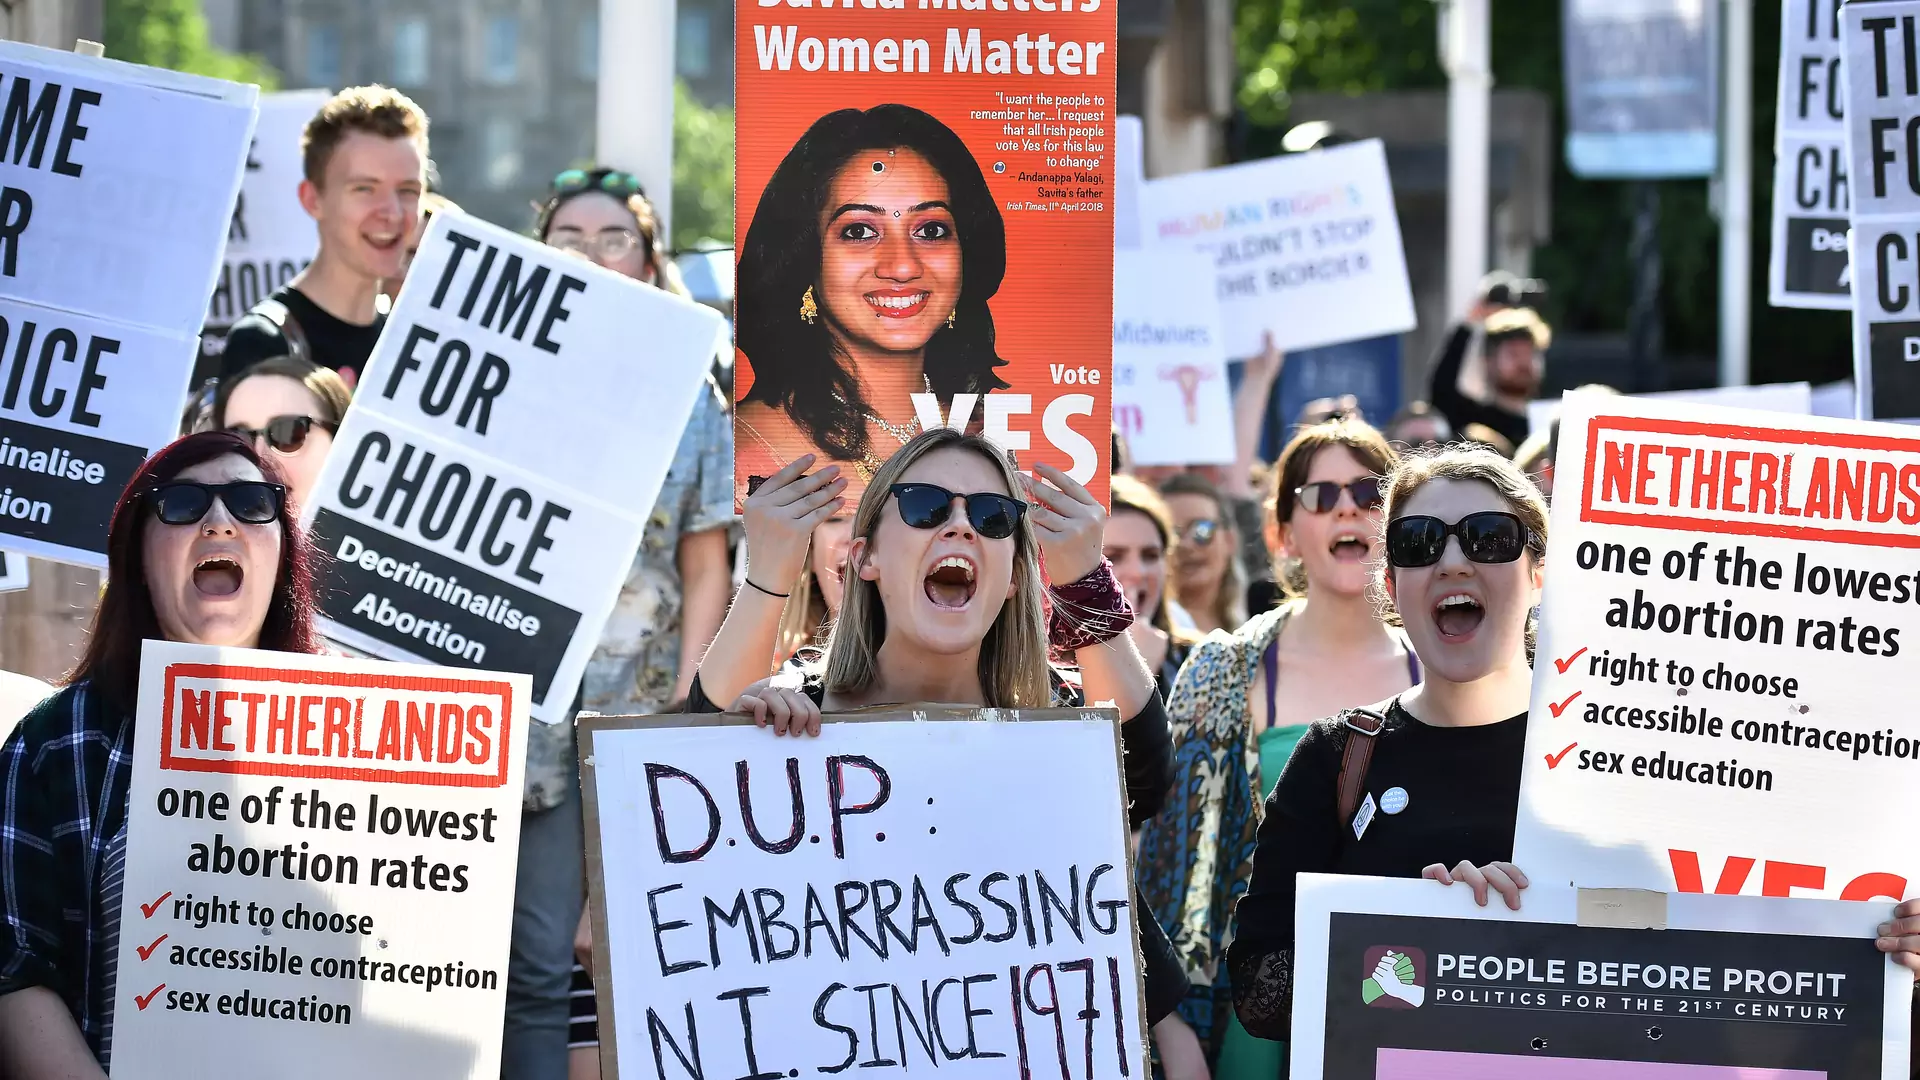 Kiedyś zakaz rozwodów, dziś wolna aborcja. Czy Polska pójdzie w ślady Irlandii?